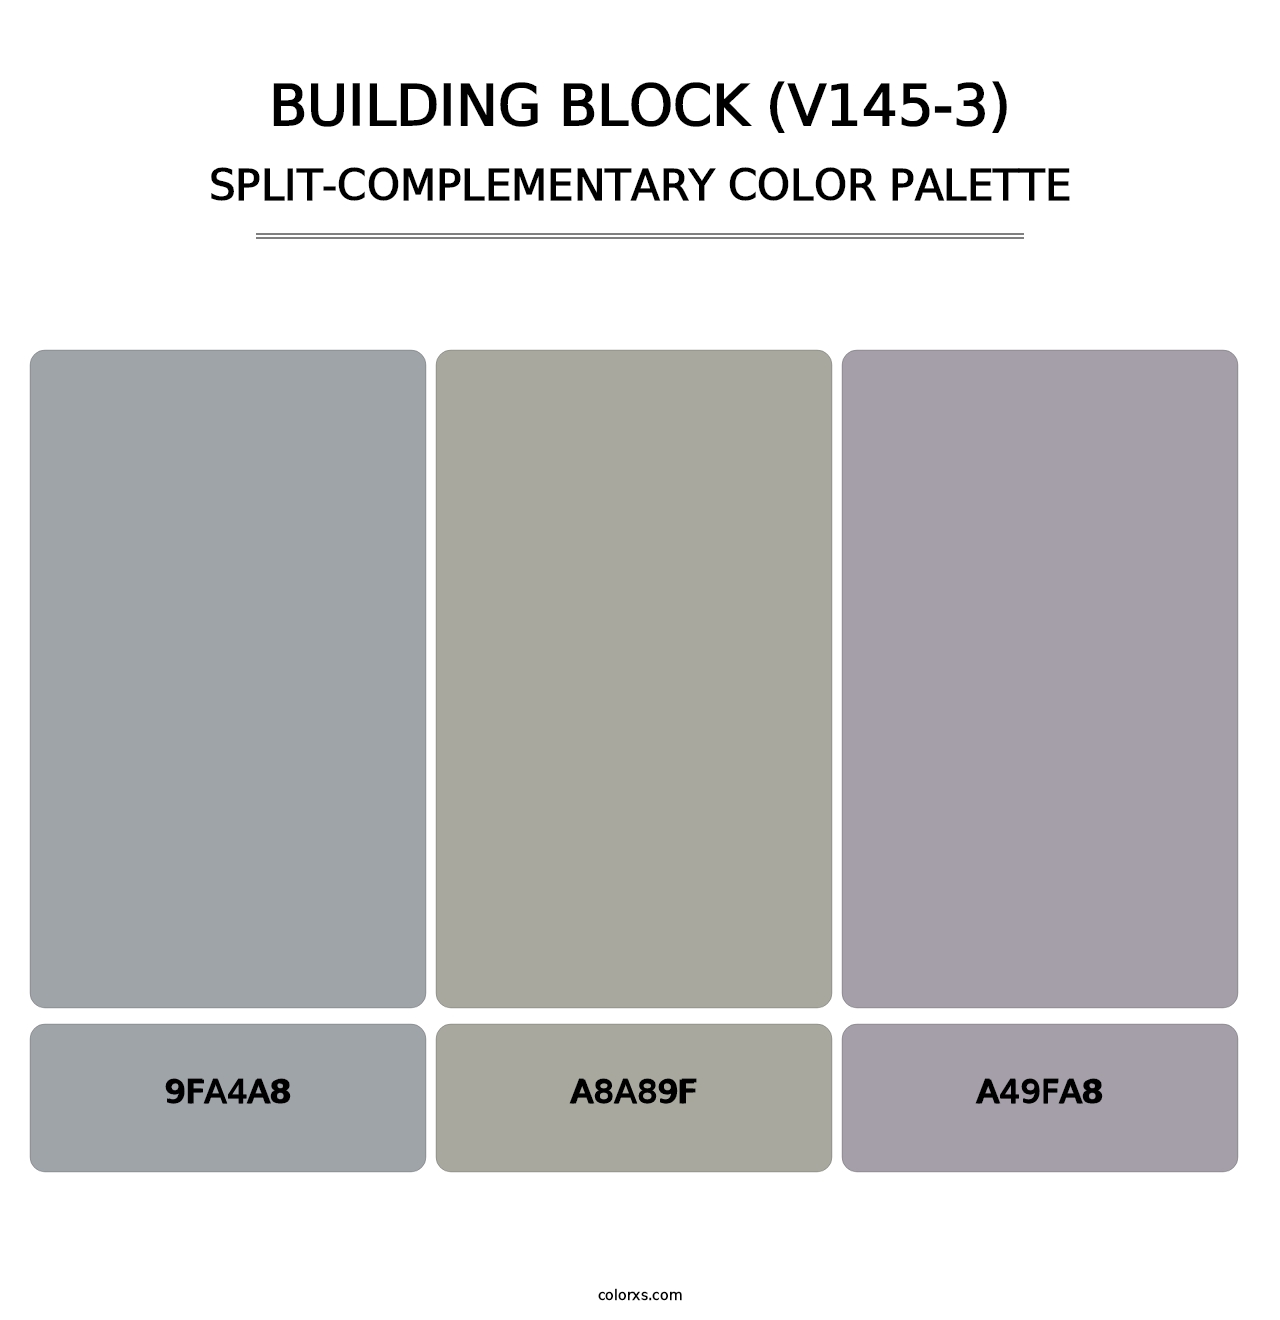 Building Block (V145-3) - Split-Complementary Color Palette